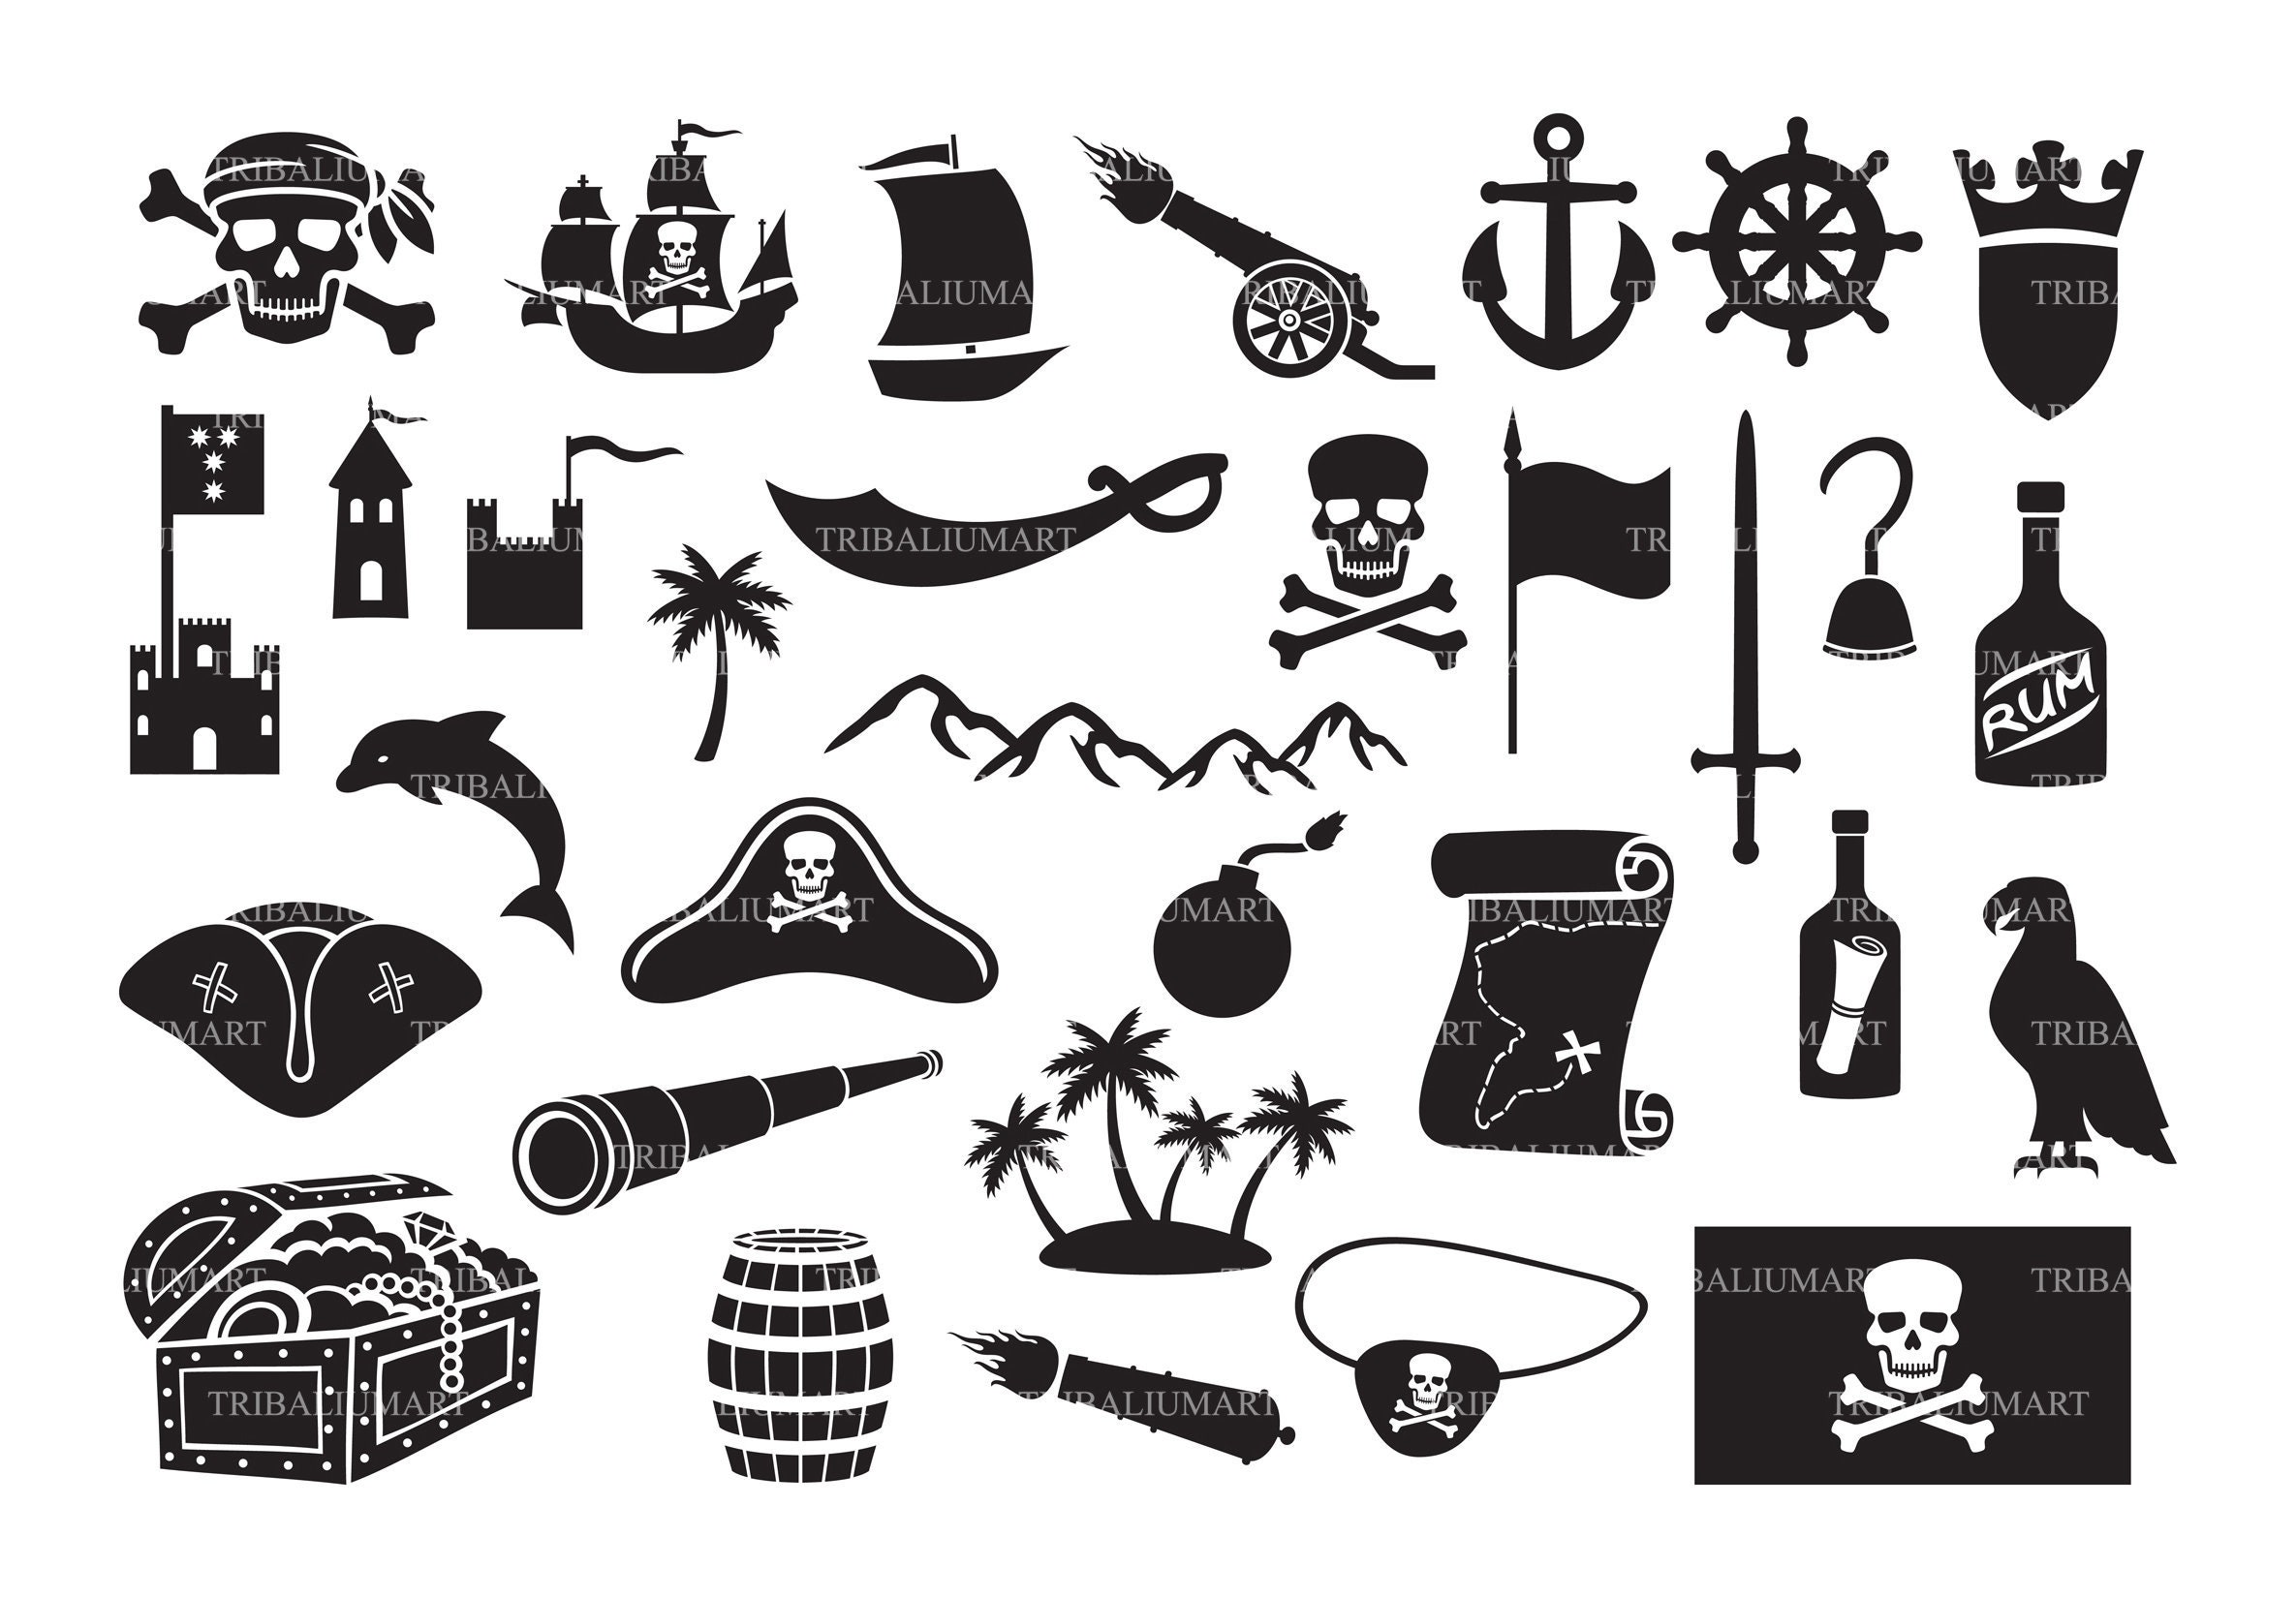 Piratas Iconos Conjunto De Vectores Sobre Fondo Blanco. Estándar Pirata  Accesorios Mapa Del Tesoro, Barco, Loro, Ron, Jolly Rodger, Gancho, Etc  Aislado Símbolos Sobre El Tema De Los Piratas En Un Estilo